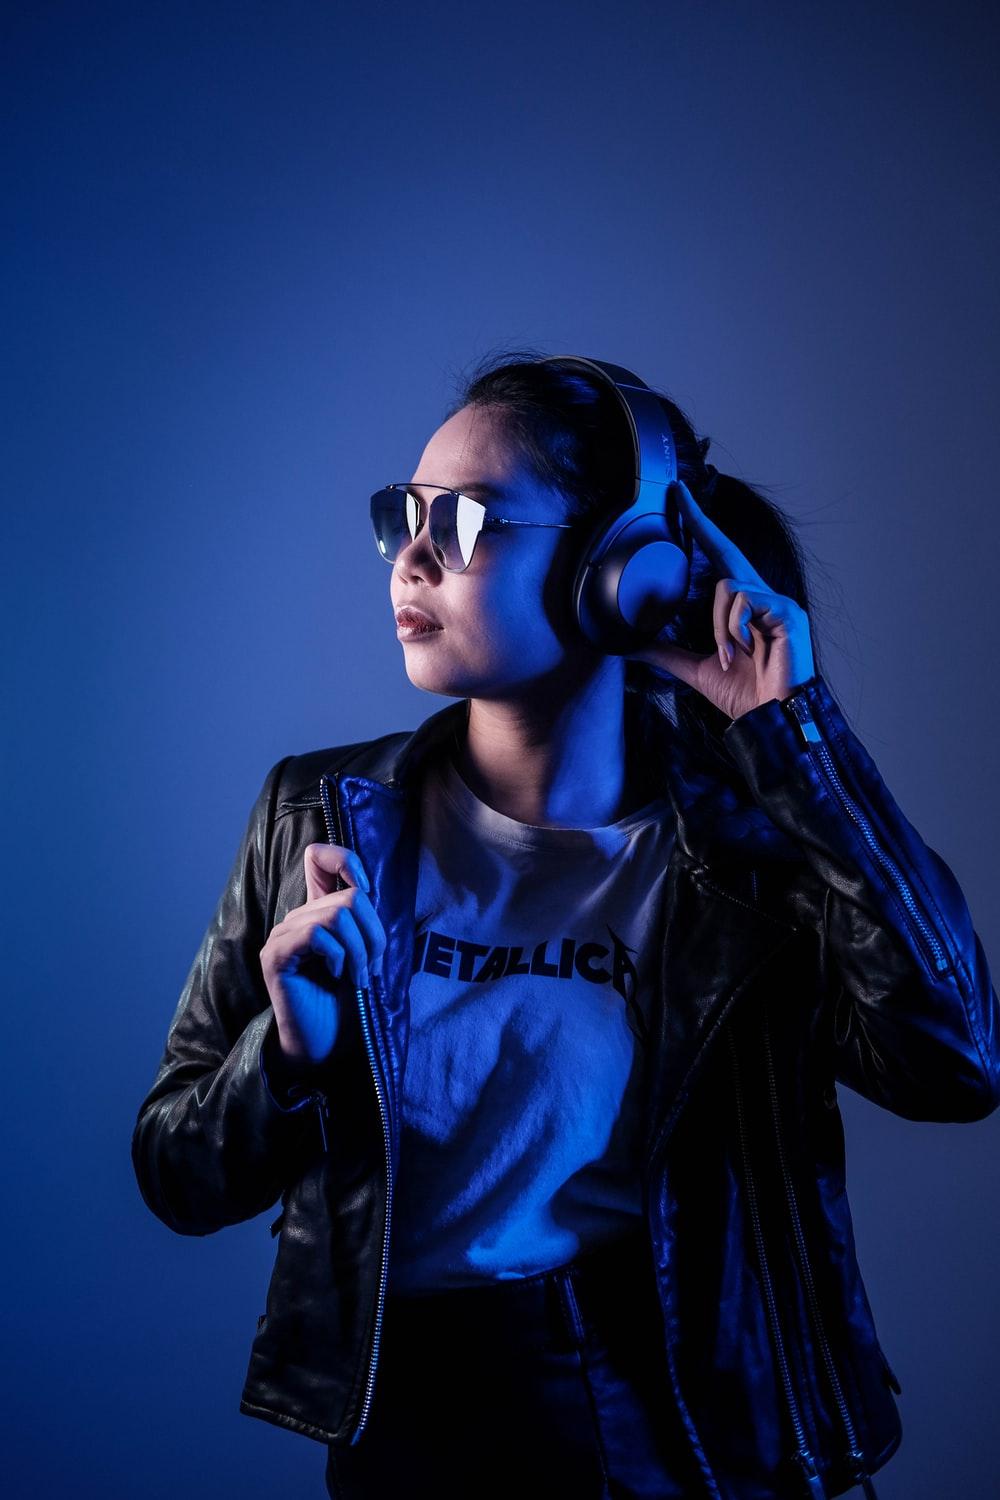 Blue Headphones Wallpapers - Top Free Blue Headphones Backgrounds ...